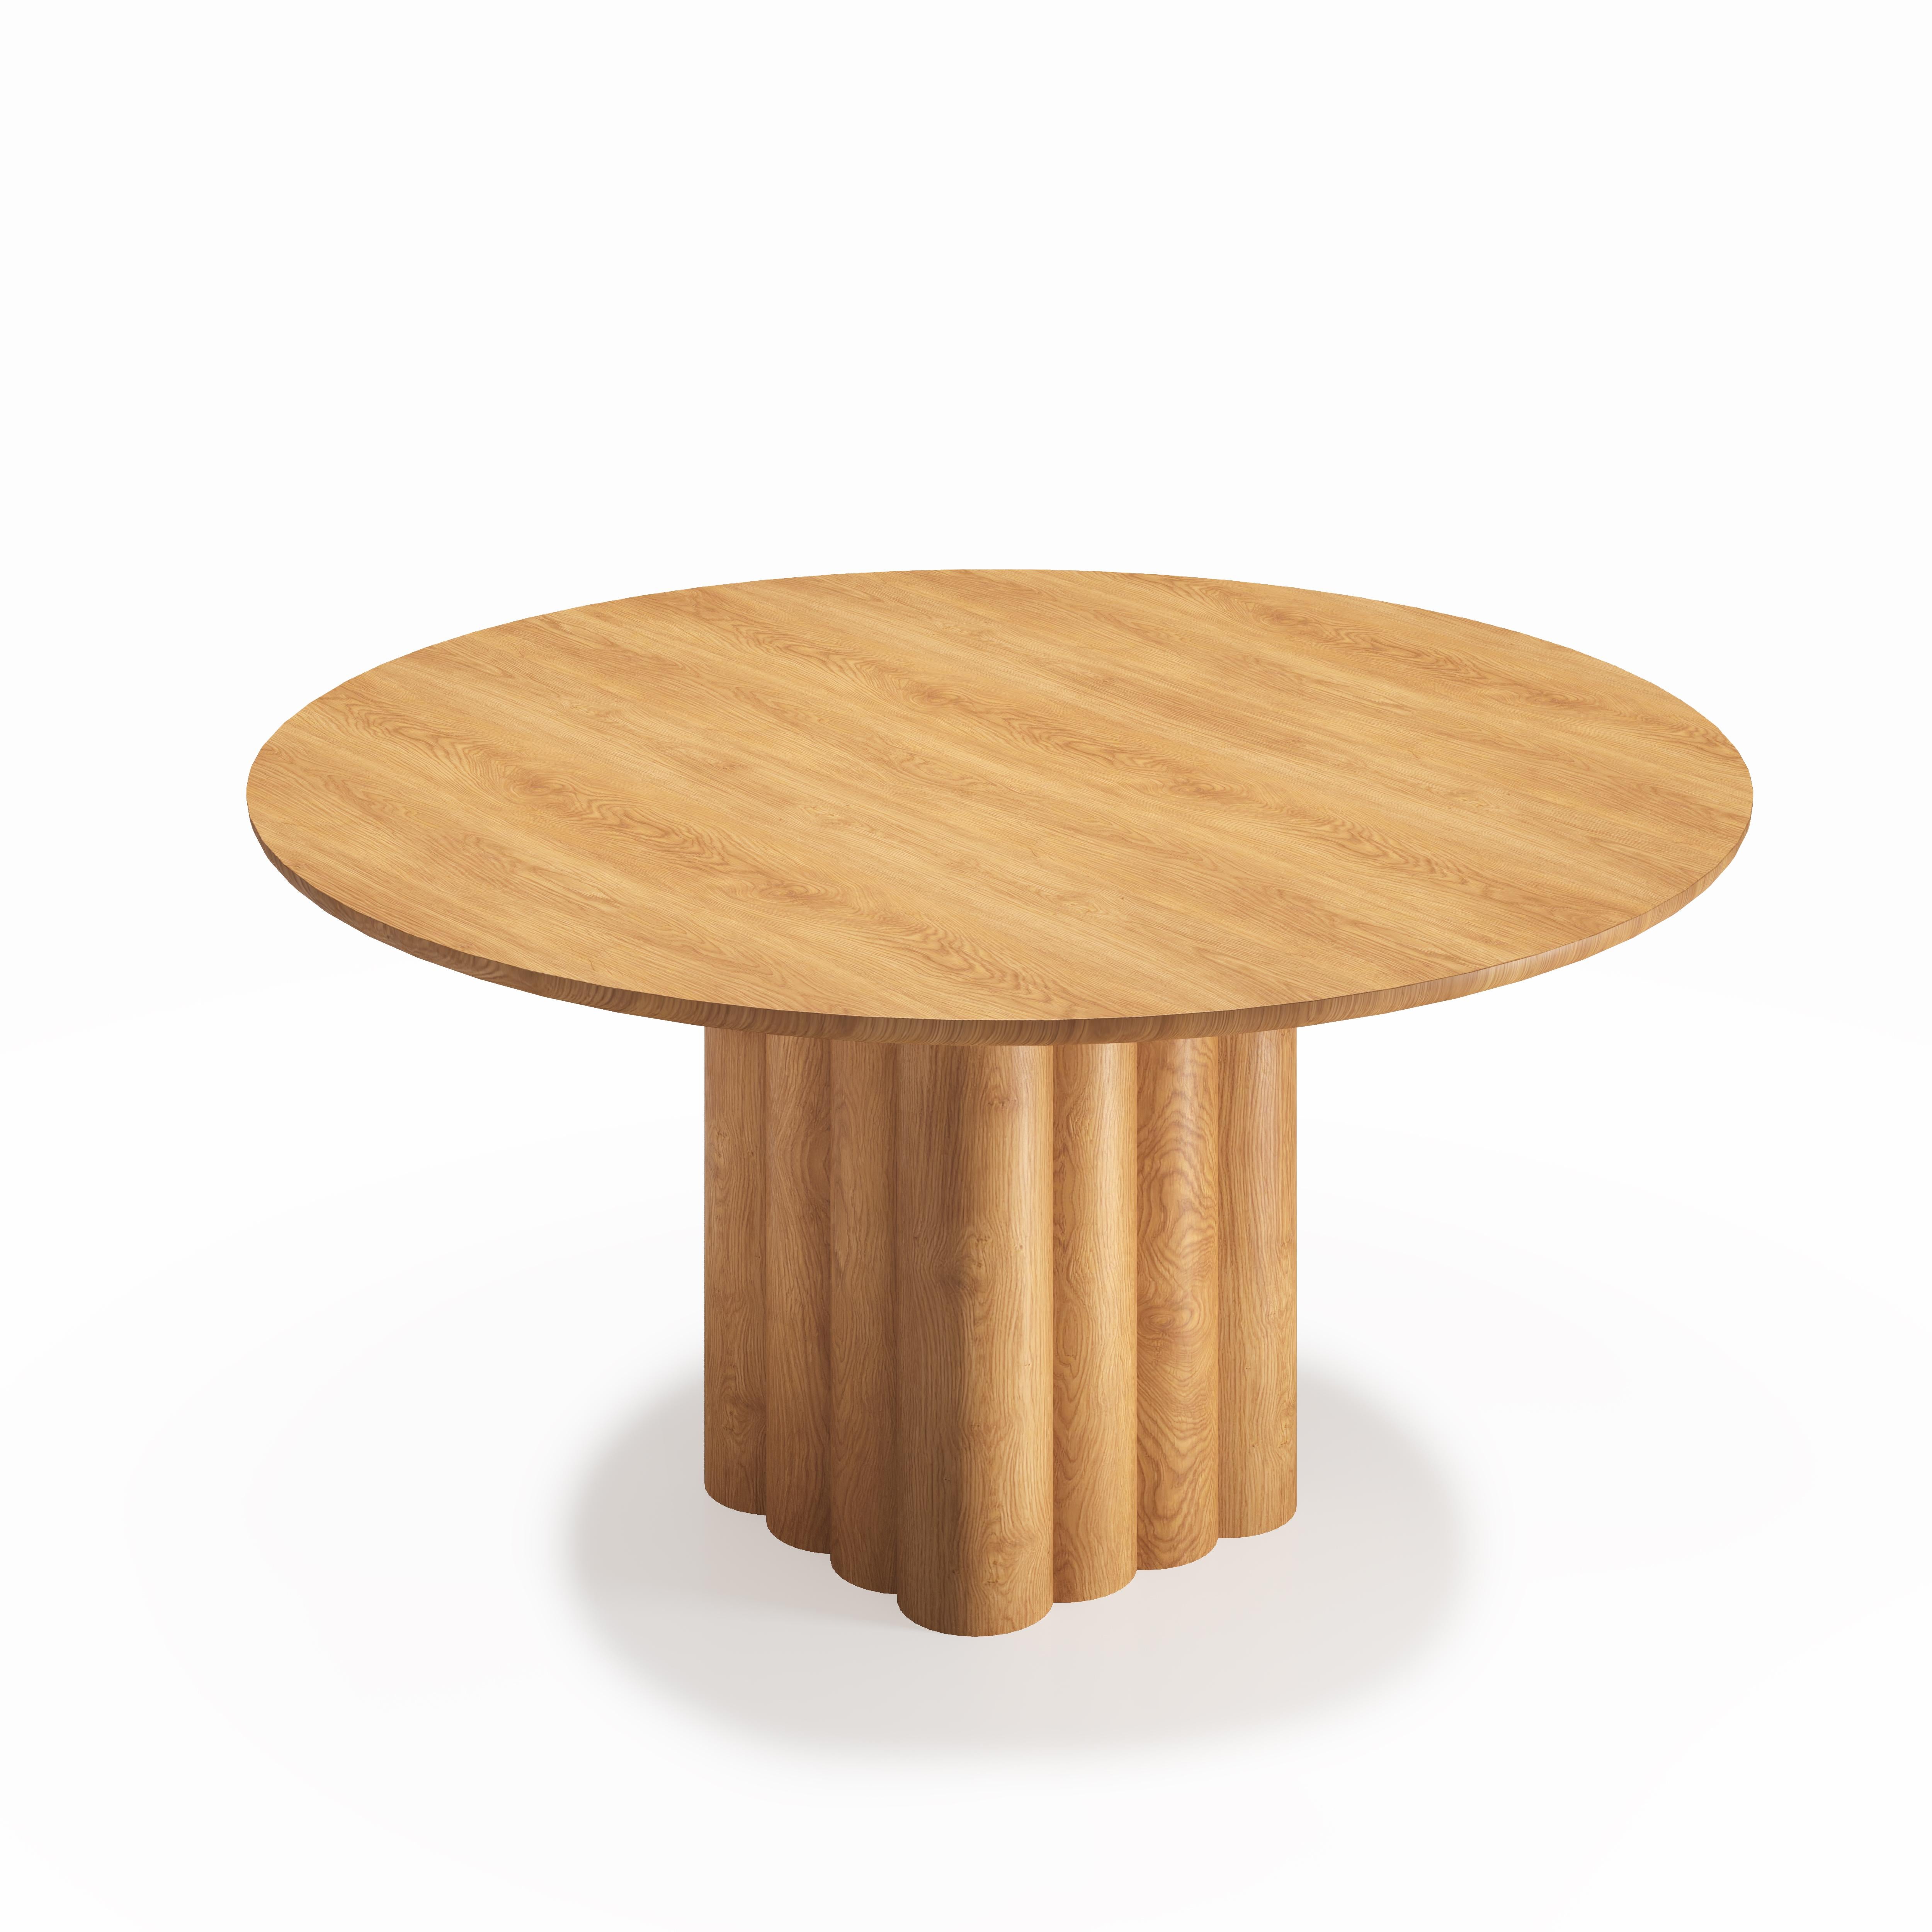 Chêne Table de salle à manger rondePlush par Dk3, chêne fumé ou noyer, 160 cm en vente